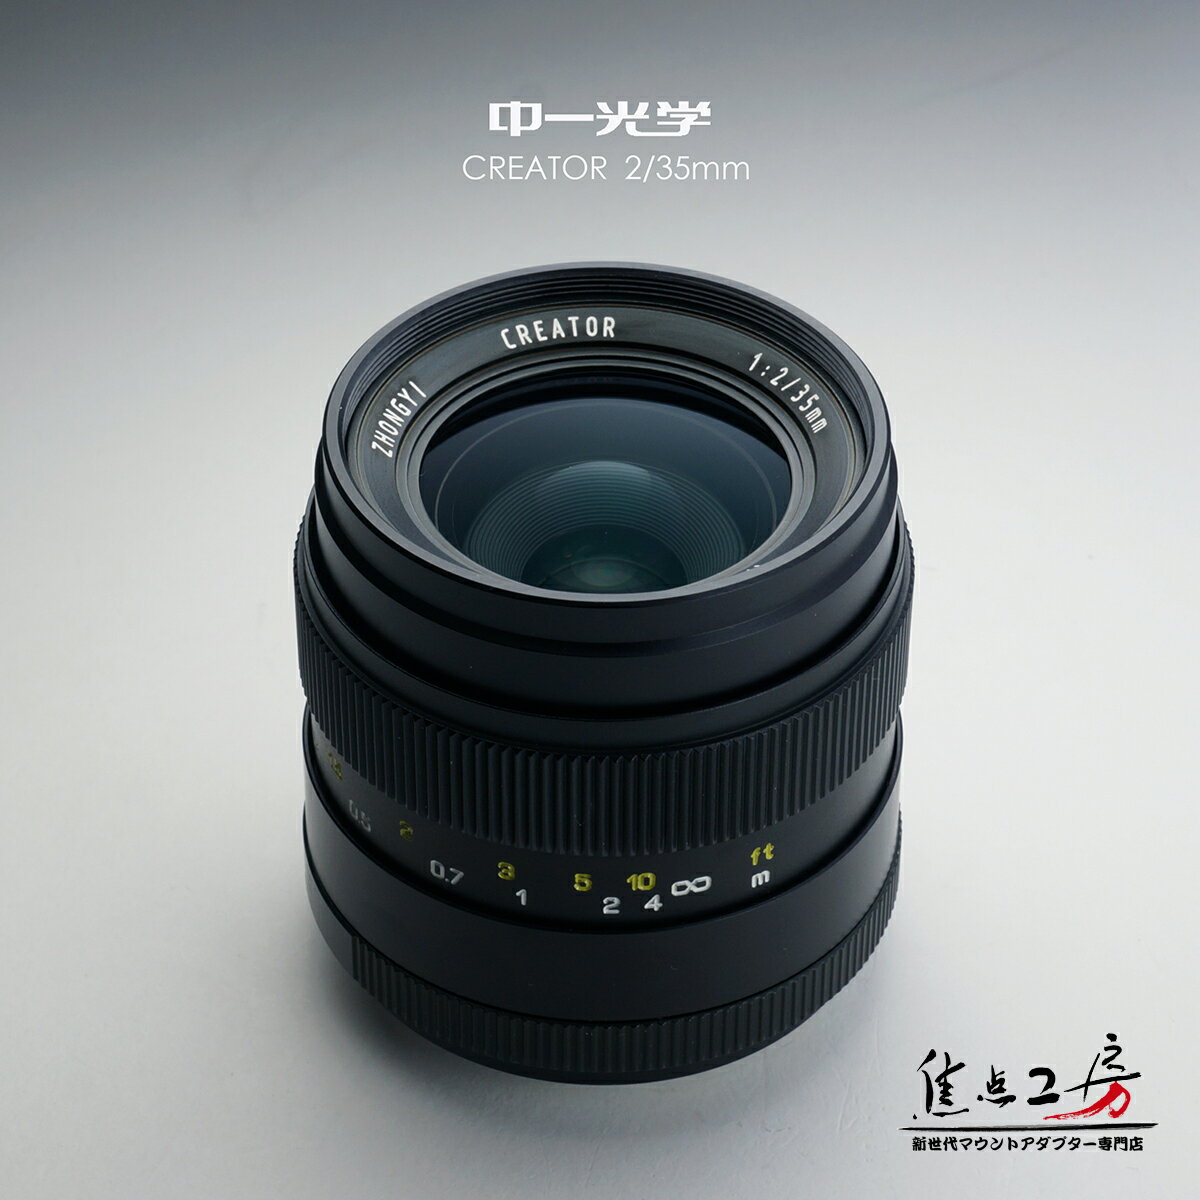 「CREATOR」シリーズは中一光学が開発した一眼レフカメラ用レンズです。 中一光学は中国瀋陽の光学メーカーで、MITAKON(三竹光学のヨーロッパ向けブランド)のOEMメーカーとして30年の歴史があります。 中一光学/ZHONGYI CREATOR 35mm F2.0 - ペンタックスKマウント 単焦点レンズ 商品型番 CREATOR 2/35mm [PK] 商品特徴 開放F2.0の明るさとシャープな切れ味、画像の中心から周辺部まで安定した画質を実現。 風景・スナップ等に最適なレンズ。最短撮影距離0.25mと近接撮影も可能です。 ● 金属仕上げ、デザイン レンズ外観はほとんどの部分が金属製です。質感がよく、綺麗な仕上がりです。 ● 0.25mマクロ撮影 35mm焦点距離で、高い解像力と大きく美しいボケを活かした、最短撮影距離0.25mまでのクローズアップ撮影を気軽に楽しめます。 ポートレートや風景の撮影などでも独特の味わいが得られます。 ● 35mmフルサイズのイメージサークル 35ミリ判フルサイズに対応する、余裕のイメージサークルを確保しています。 ● 品質とコスト両立 中一光学は、長年に渡り培ったレンズ製造経験から、特殊パーツの加工を除き、金属加工やレンズ制作まで自社生産です。 出荷前検品は一つ一つレンズの動作や状態を専門の職人が手作業で確認し調整を行い、高品質なレンズでありながら低コスト生産を実現しました。 レンズの主な仕様 焦点距離：35mm(35mm判換算) レンズ構成：5群7枚 絞り羽根：9枚羽根 フォーカスレンジ：0.25m&#12316;無限遠 絞り：F2-F22 マウント：アルミニウム合金 フィルターネジ：Φ55mm 全長：Φ65*70mm 重さ：350g レンズマウント ペンタックスKマウント 対応機種 ペンタックスKマウントのレンズ交換式一眼レフカメラ